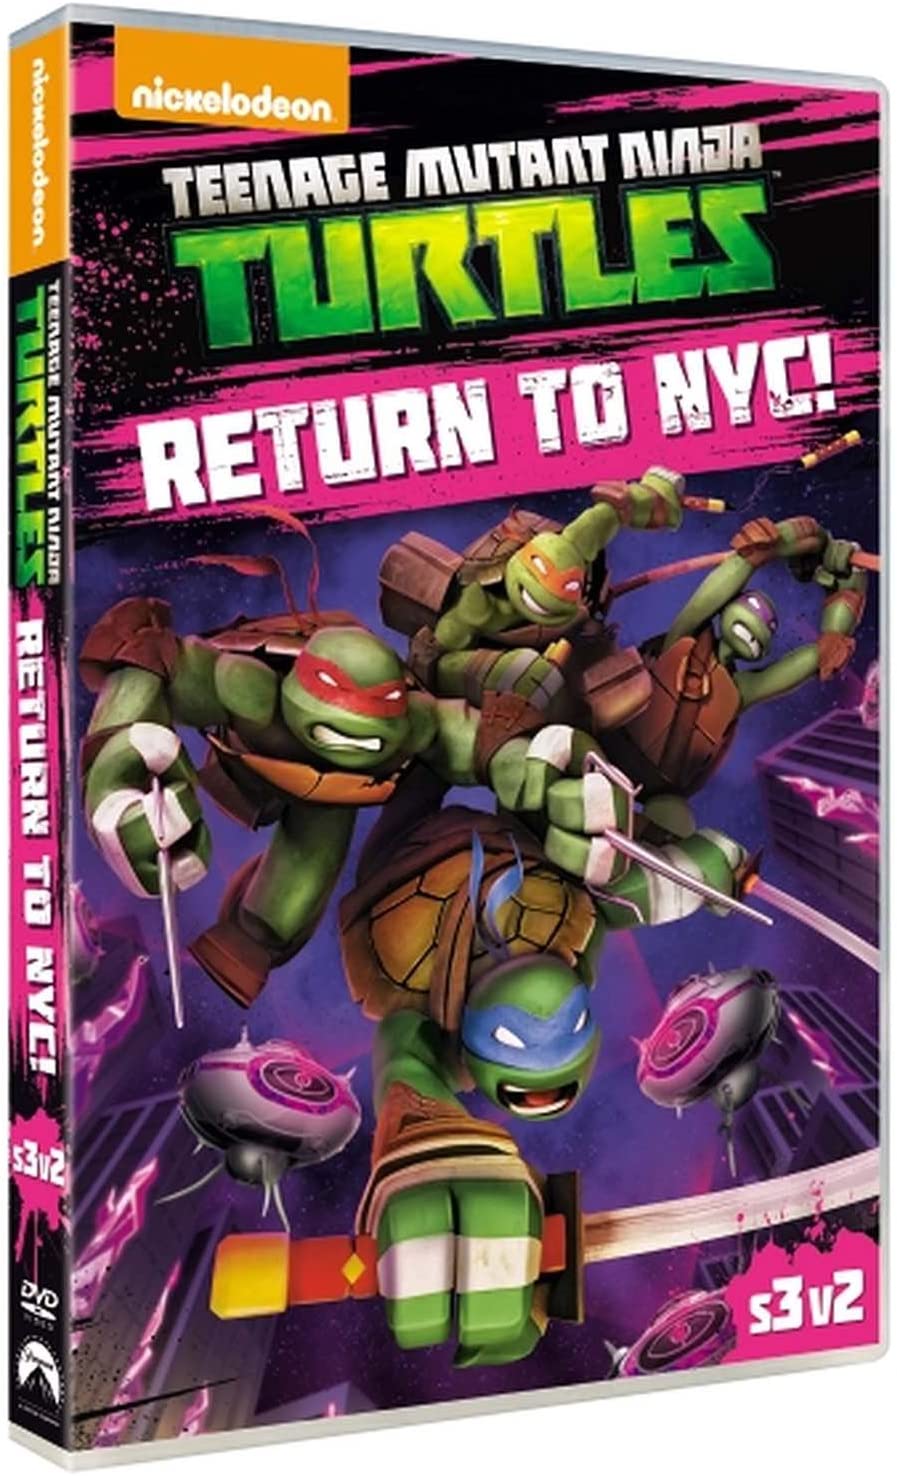 Teenage Mutant Ninja Turtles keren terug naar NYC [DVD] [2014]